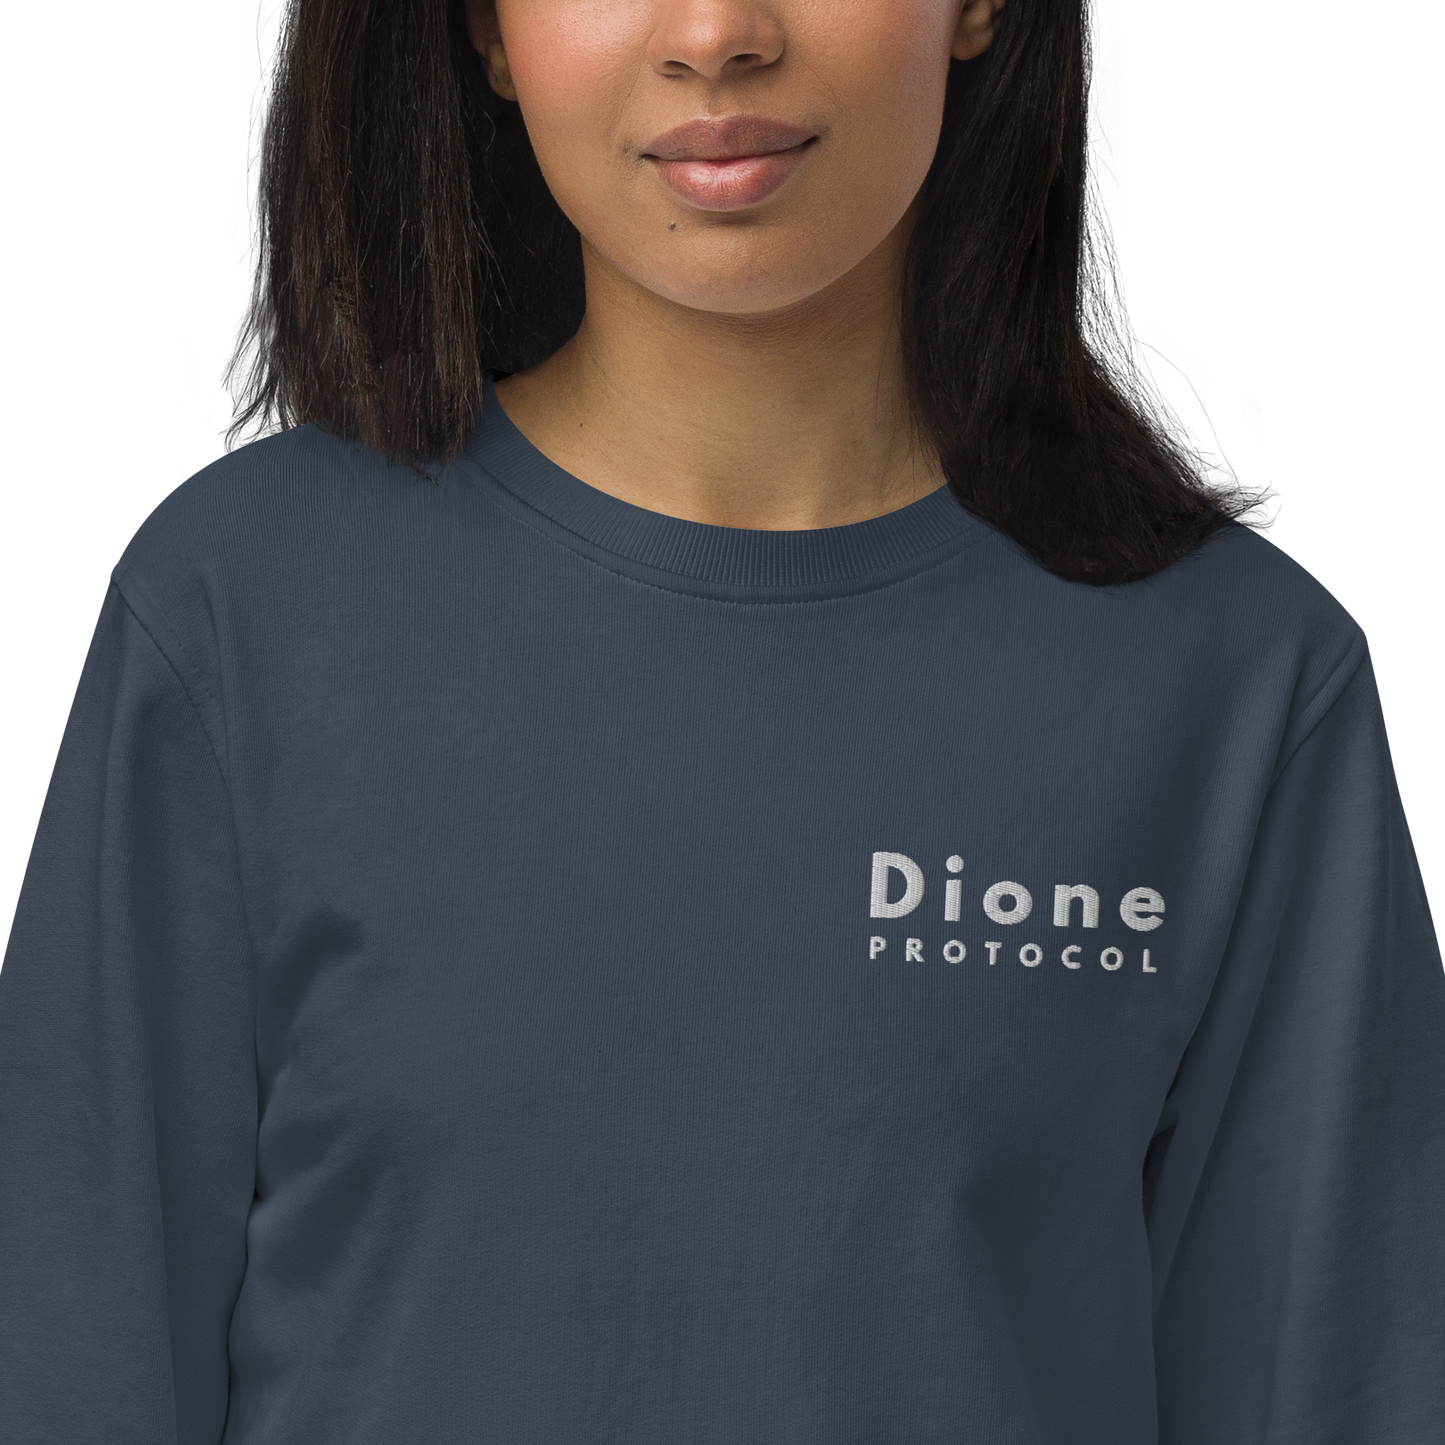 Sweat - Dione V1.0 - Noir/Marine - Standard